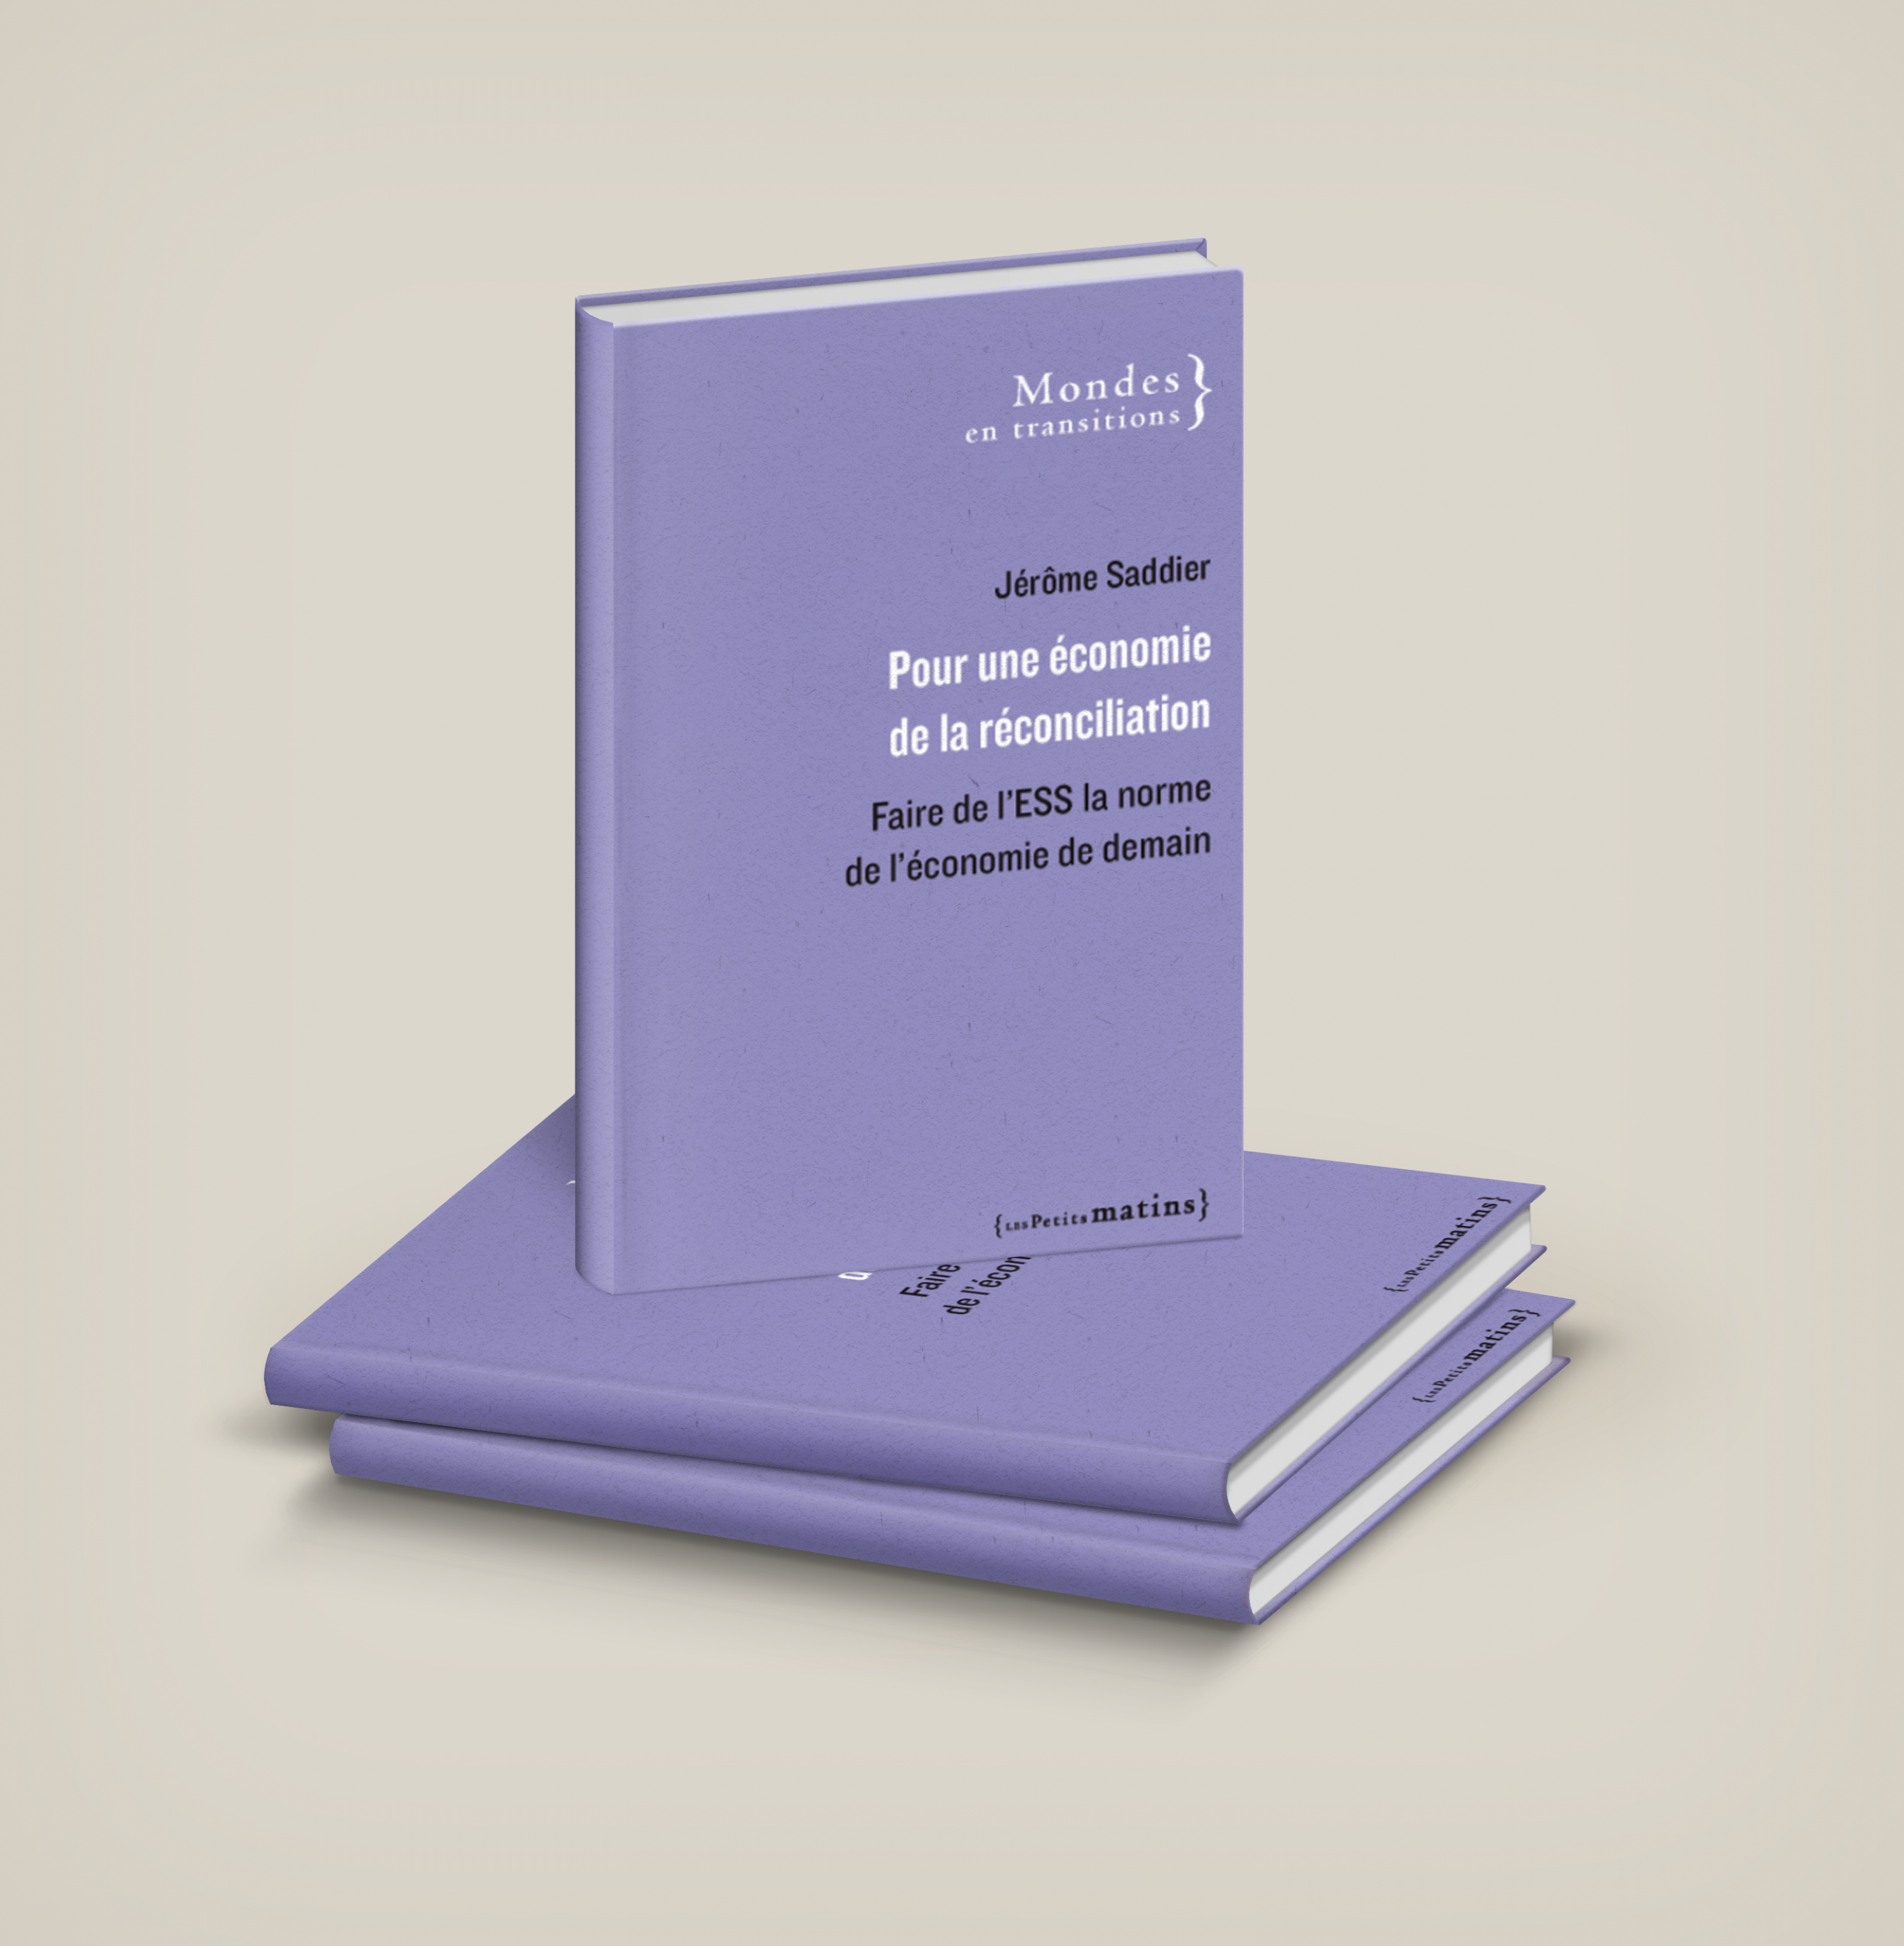 Couverture du livre de Jérôme Saddier, Président d'ESS France : "Pour une économie de la réconciliation"